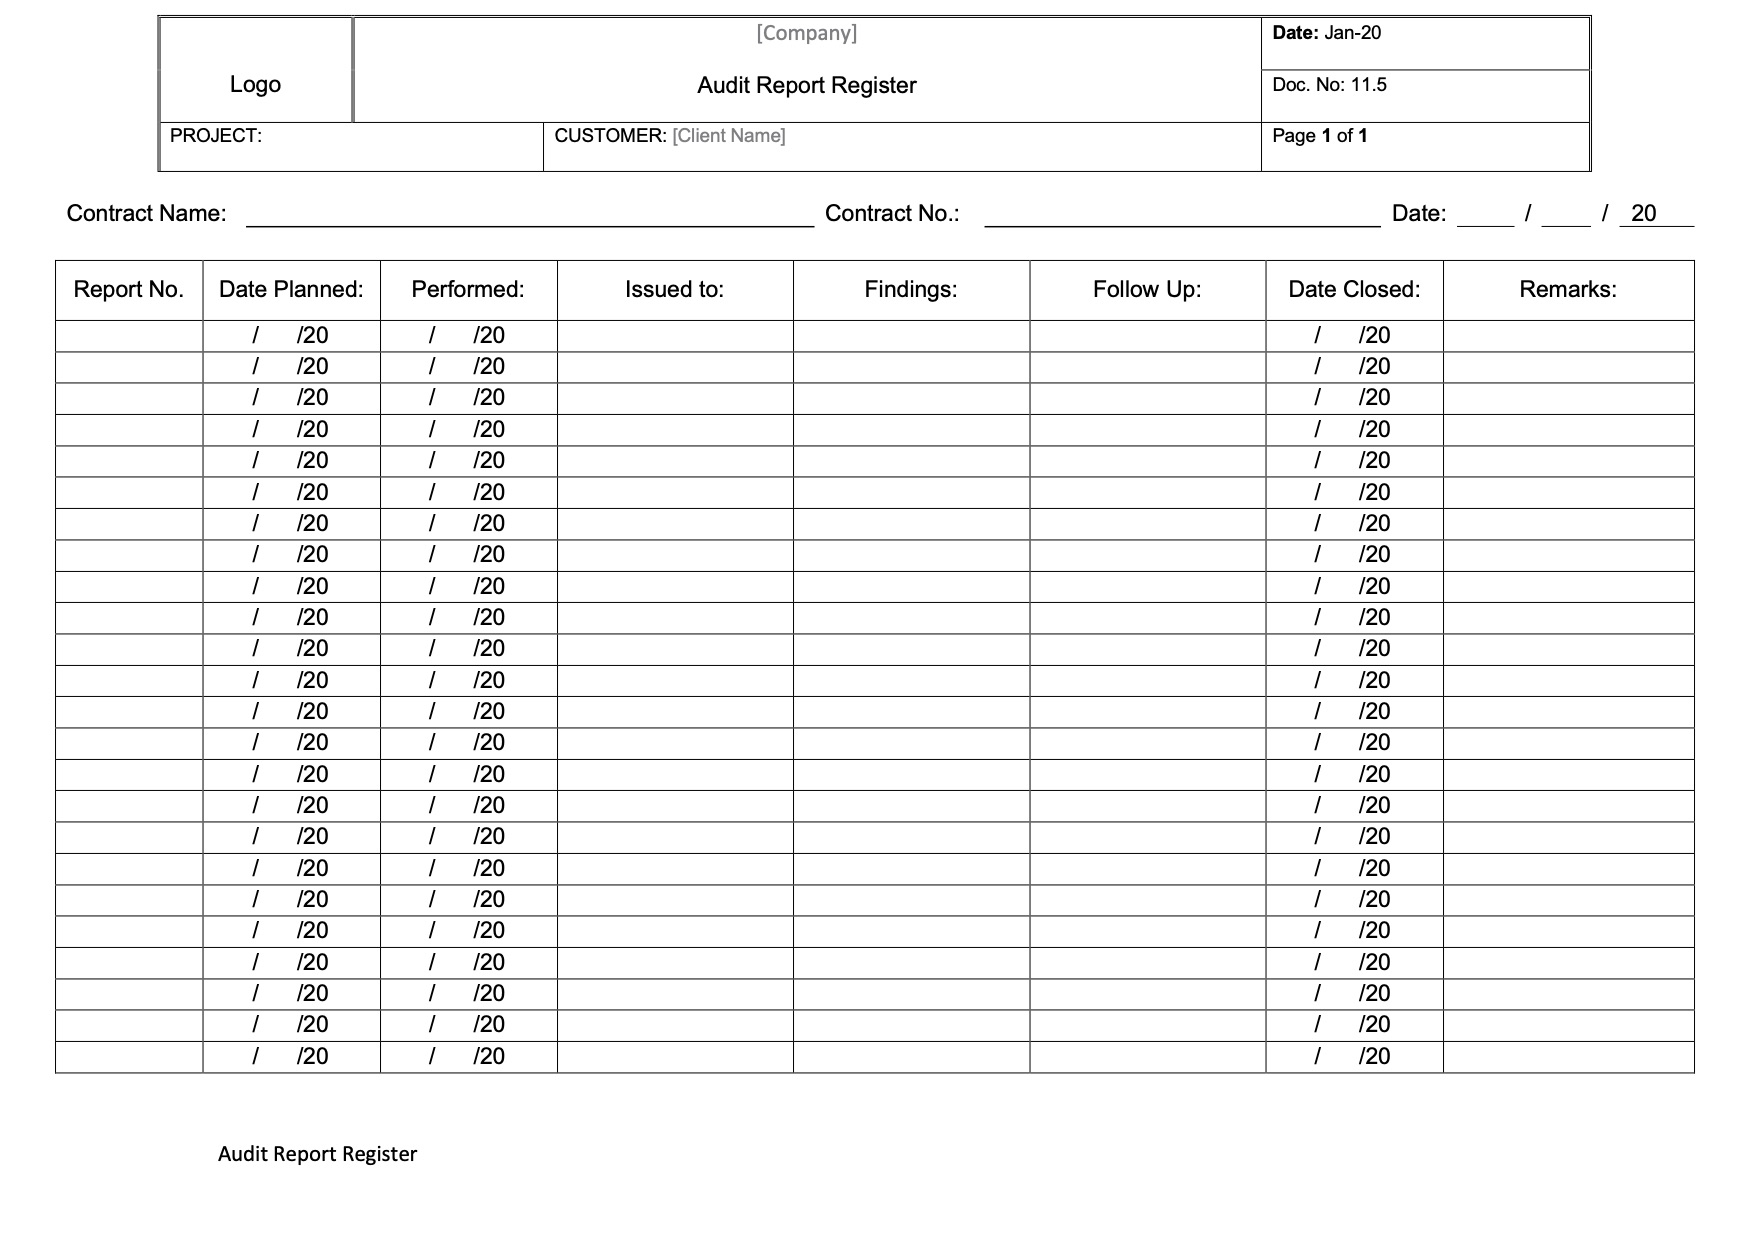 CT013 - Audit Report Register